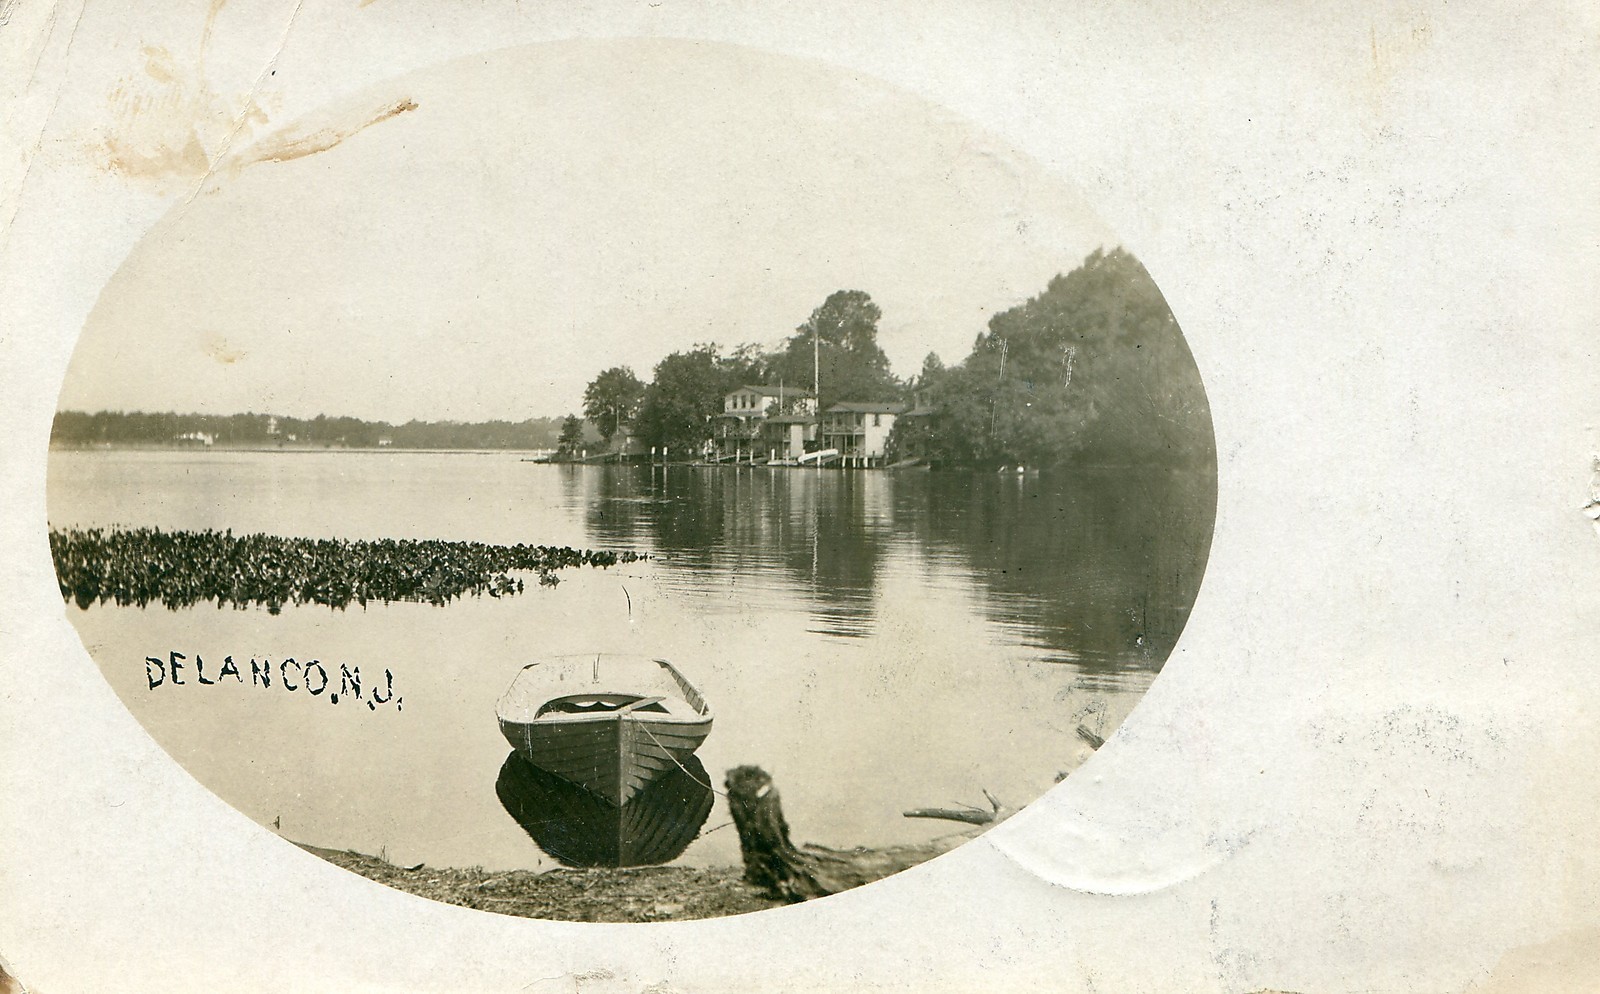 Delanco - A view along the Delaware River - 1908